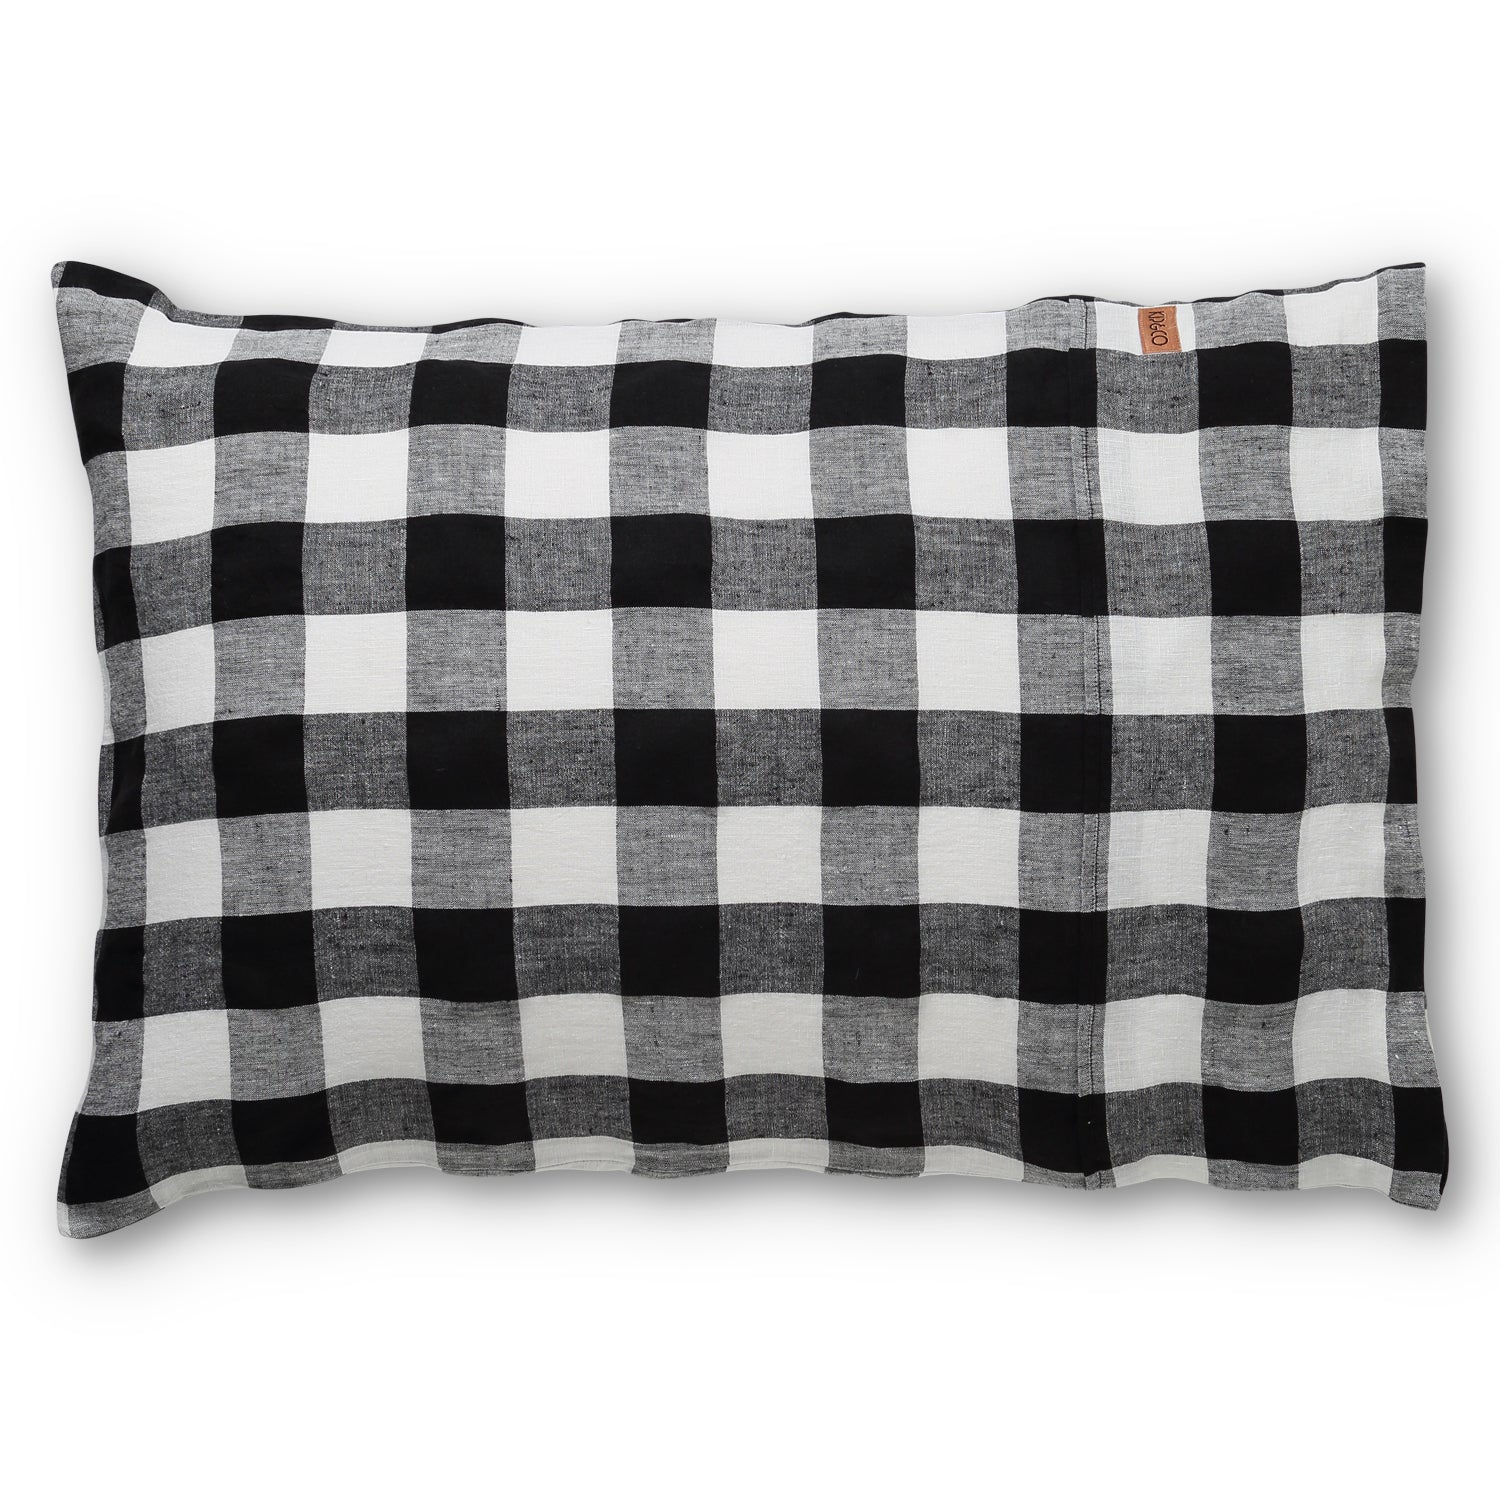 Staples Linen Pillowcase Set - Black & White Gingham